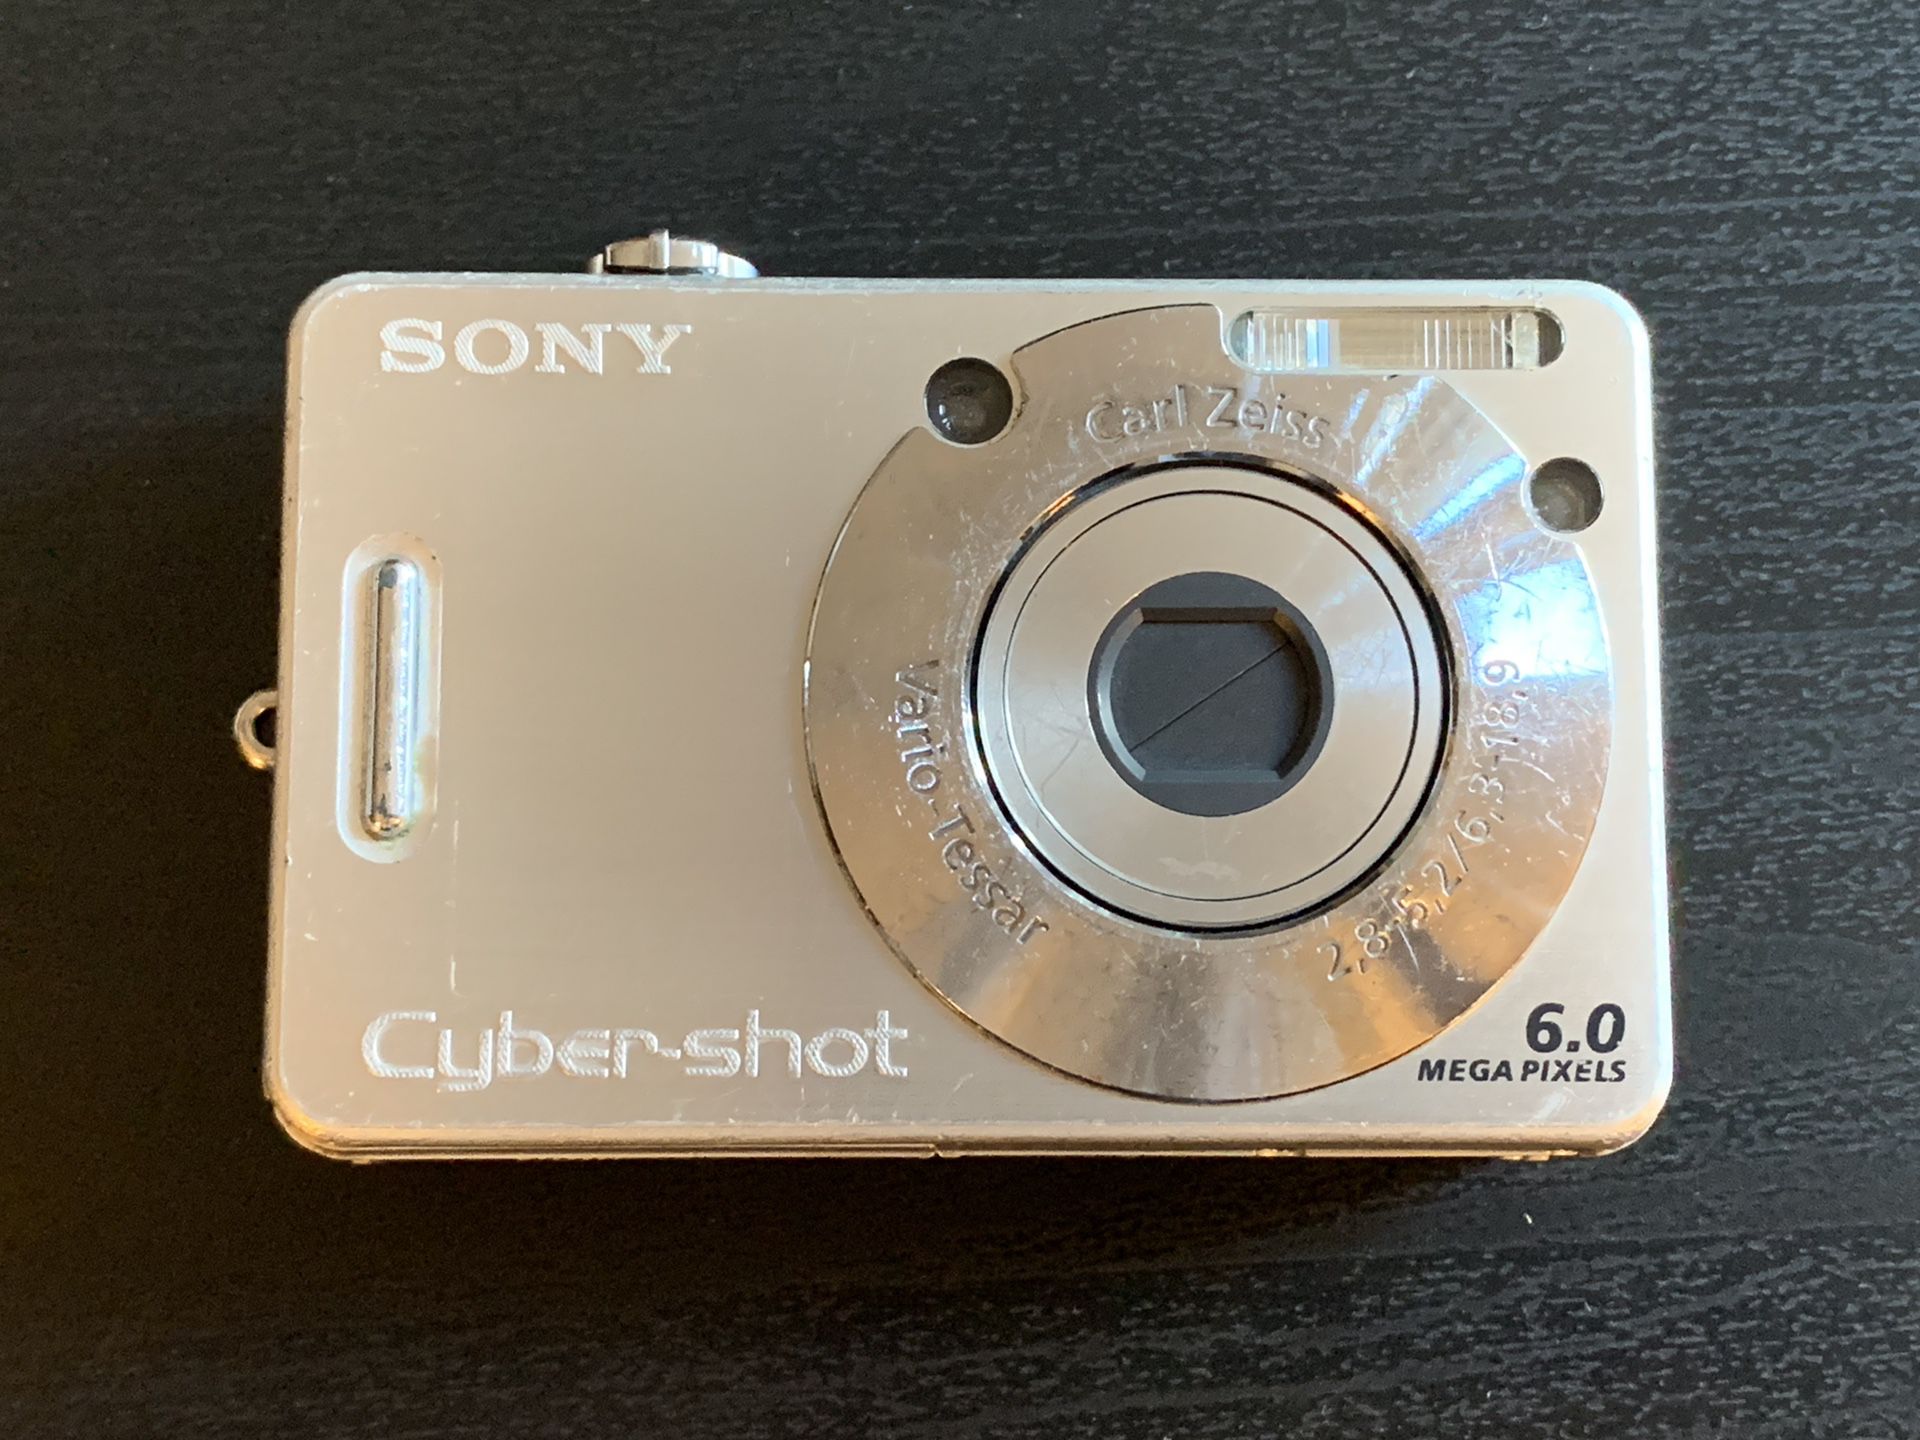 Sony DSC-W50 Cybershot Camera